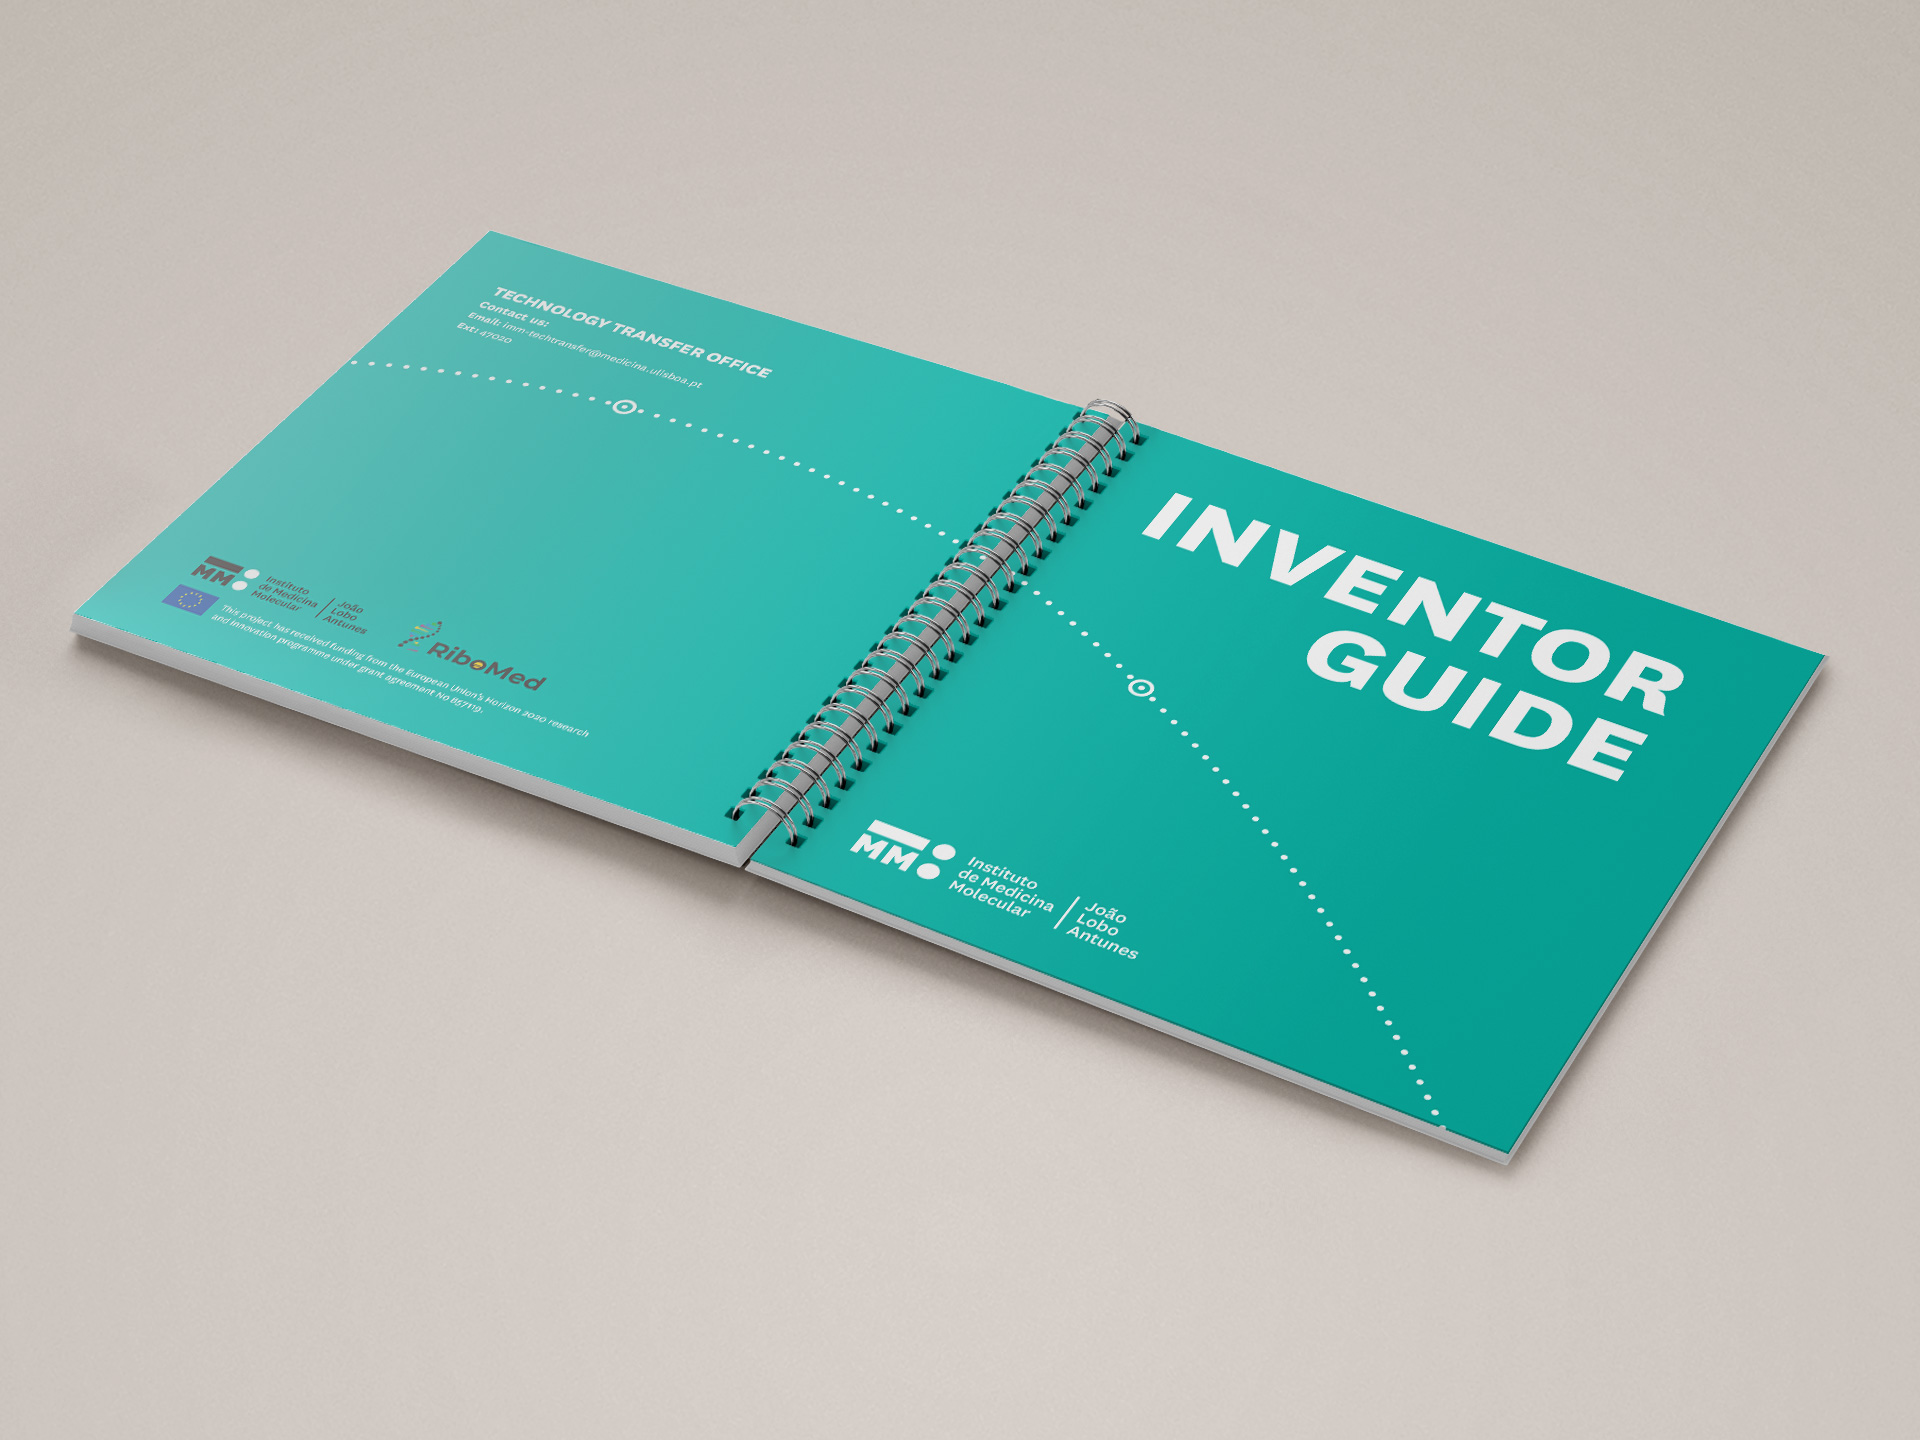 iMM TTO Inventor Guide